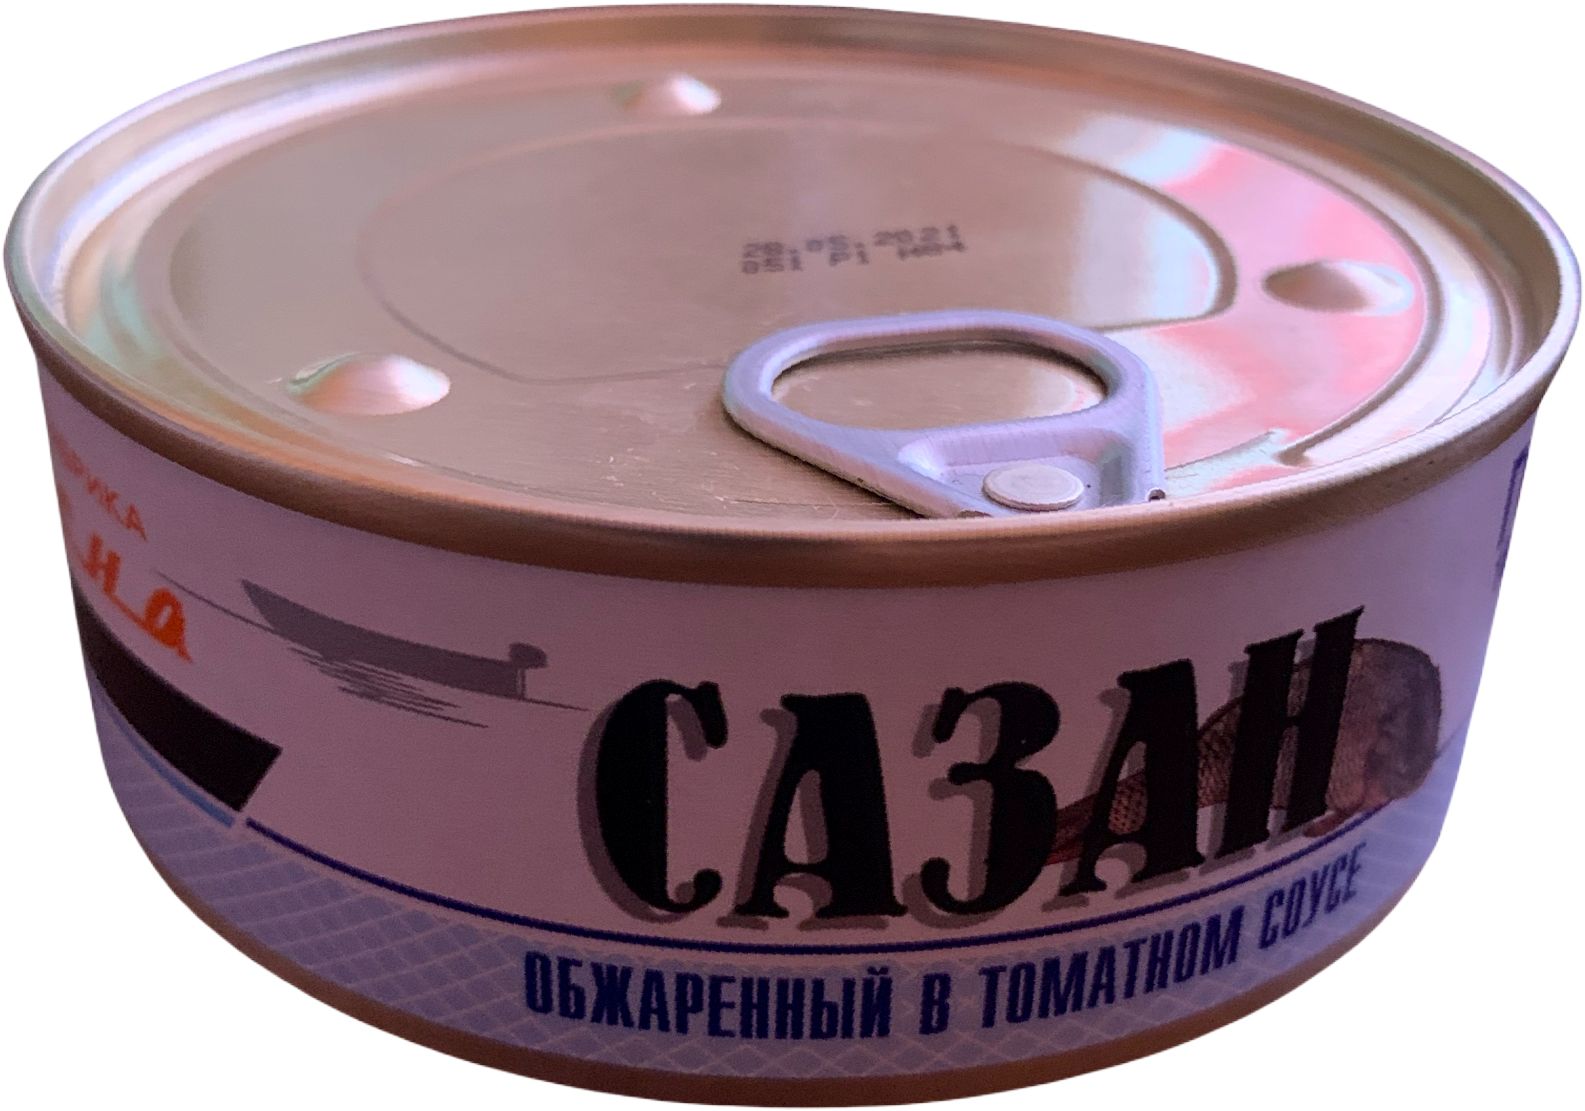 Сазан в томатном соусе обжаренный 250 гр